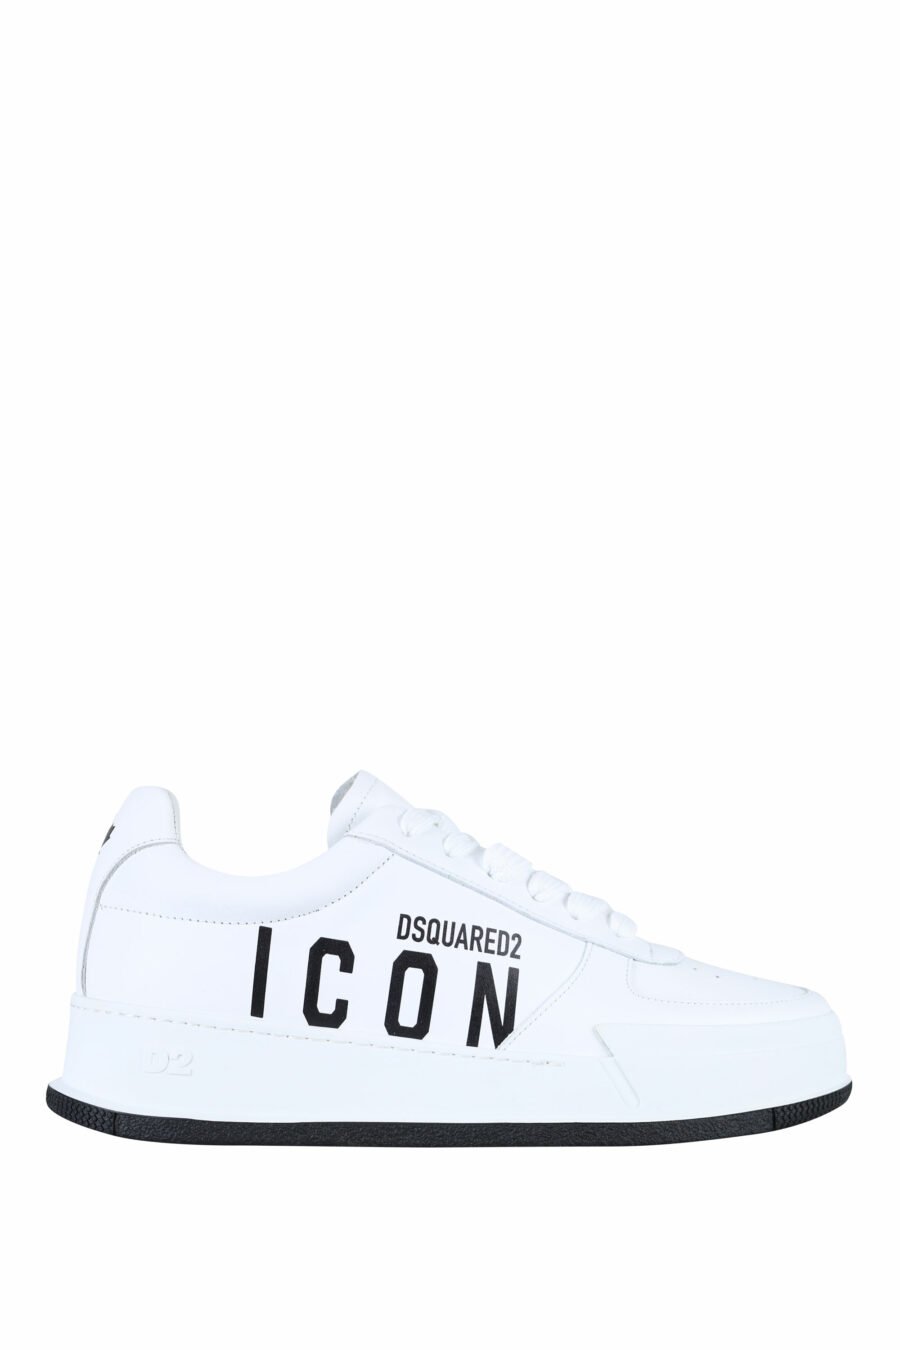 Zapatillas blancas con logo "icon" y suela negra - 8055777248850